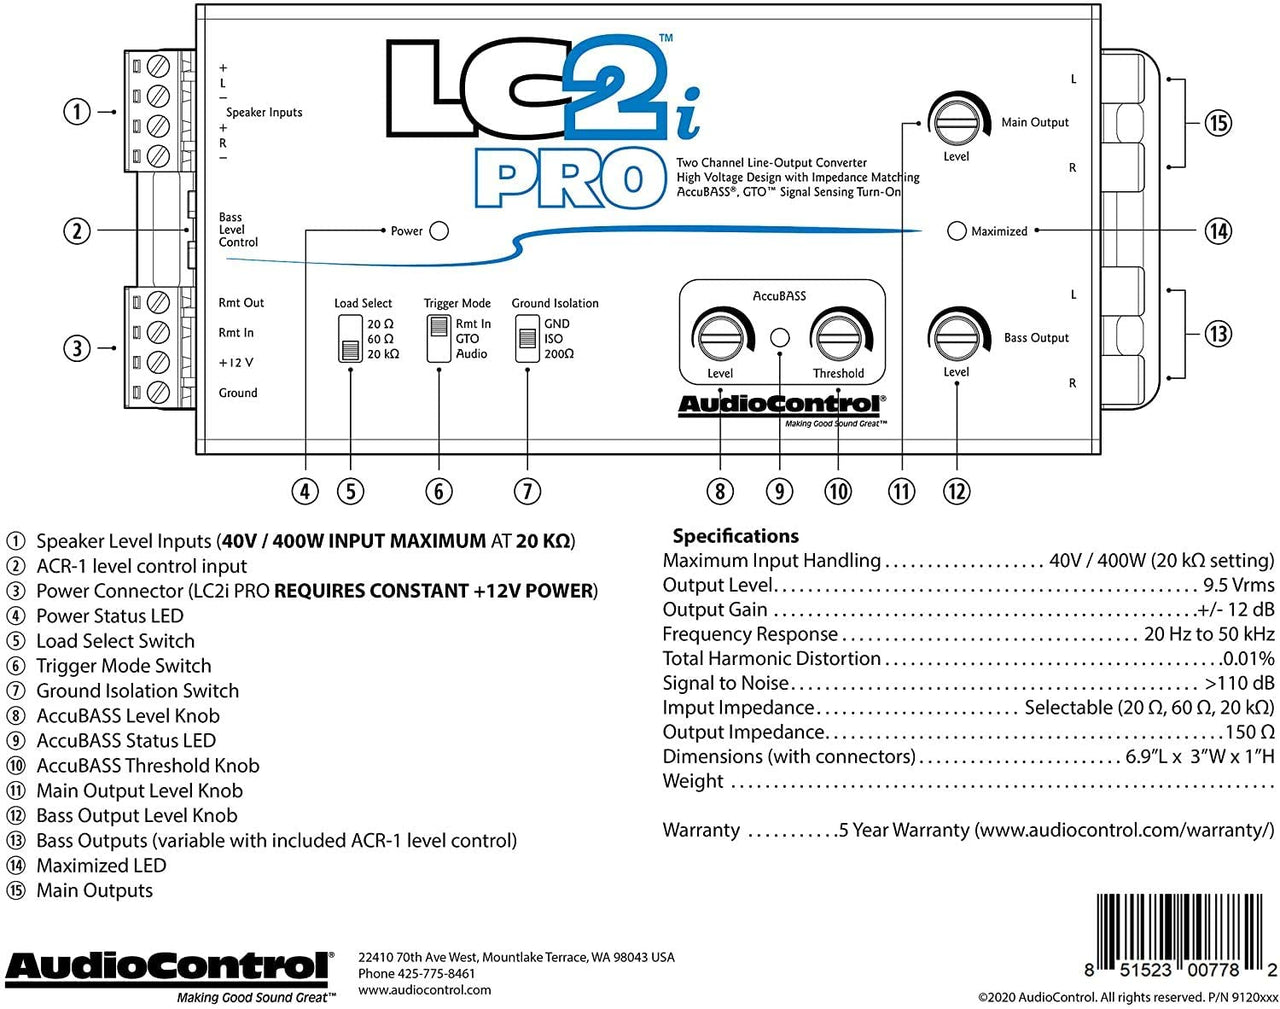 Alpine SXE1726S 6.5" Speakers & AudioControl LC2i PRO 2-Channel Line Output Converter Bundle